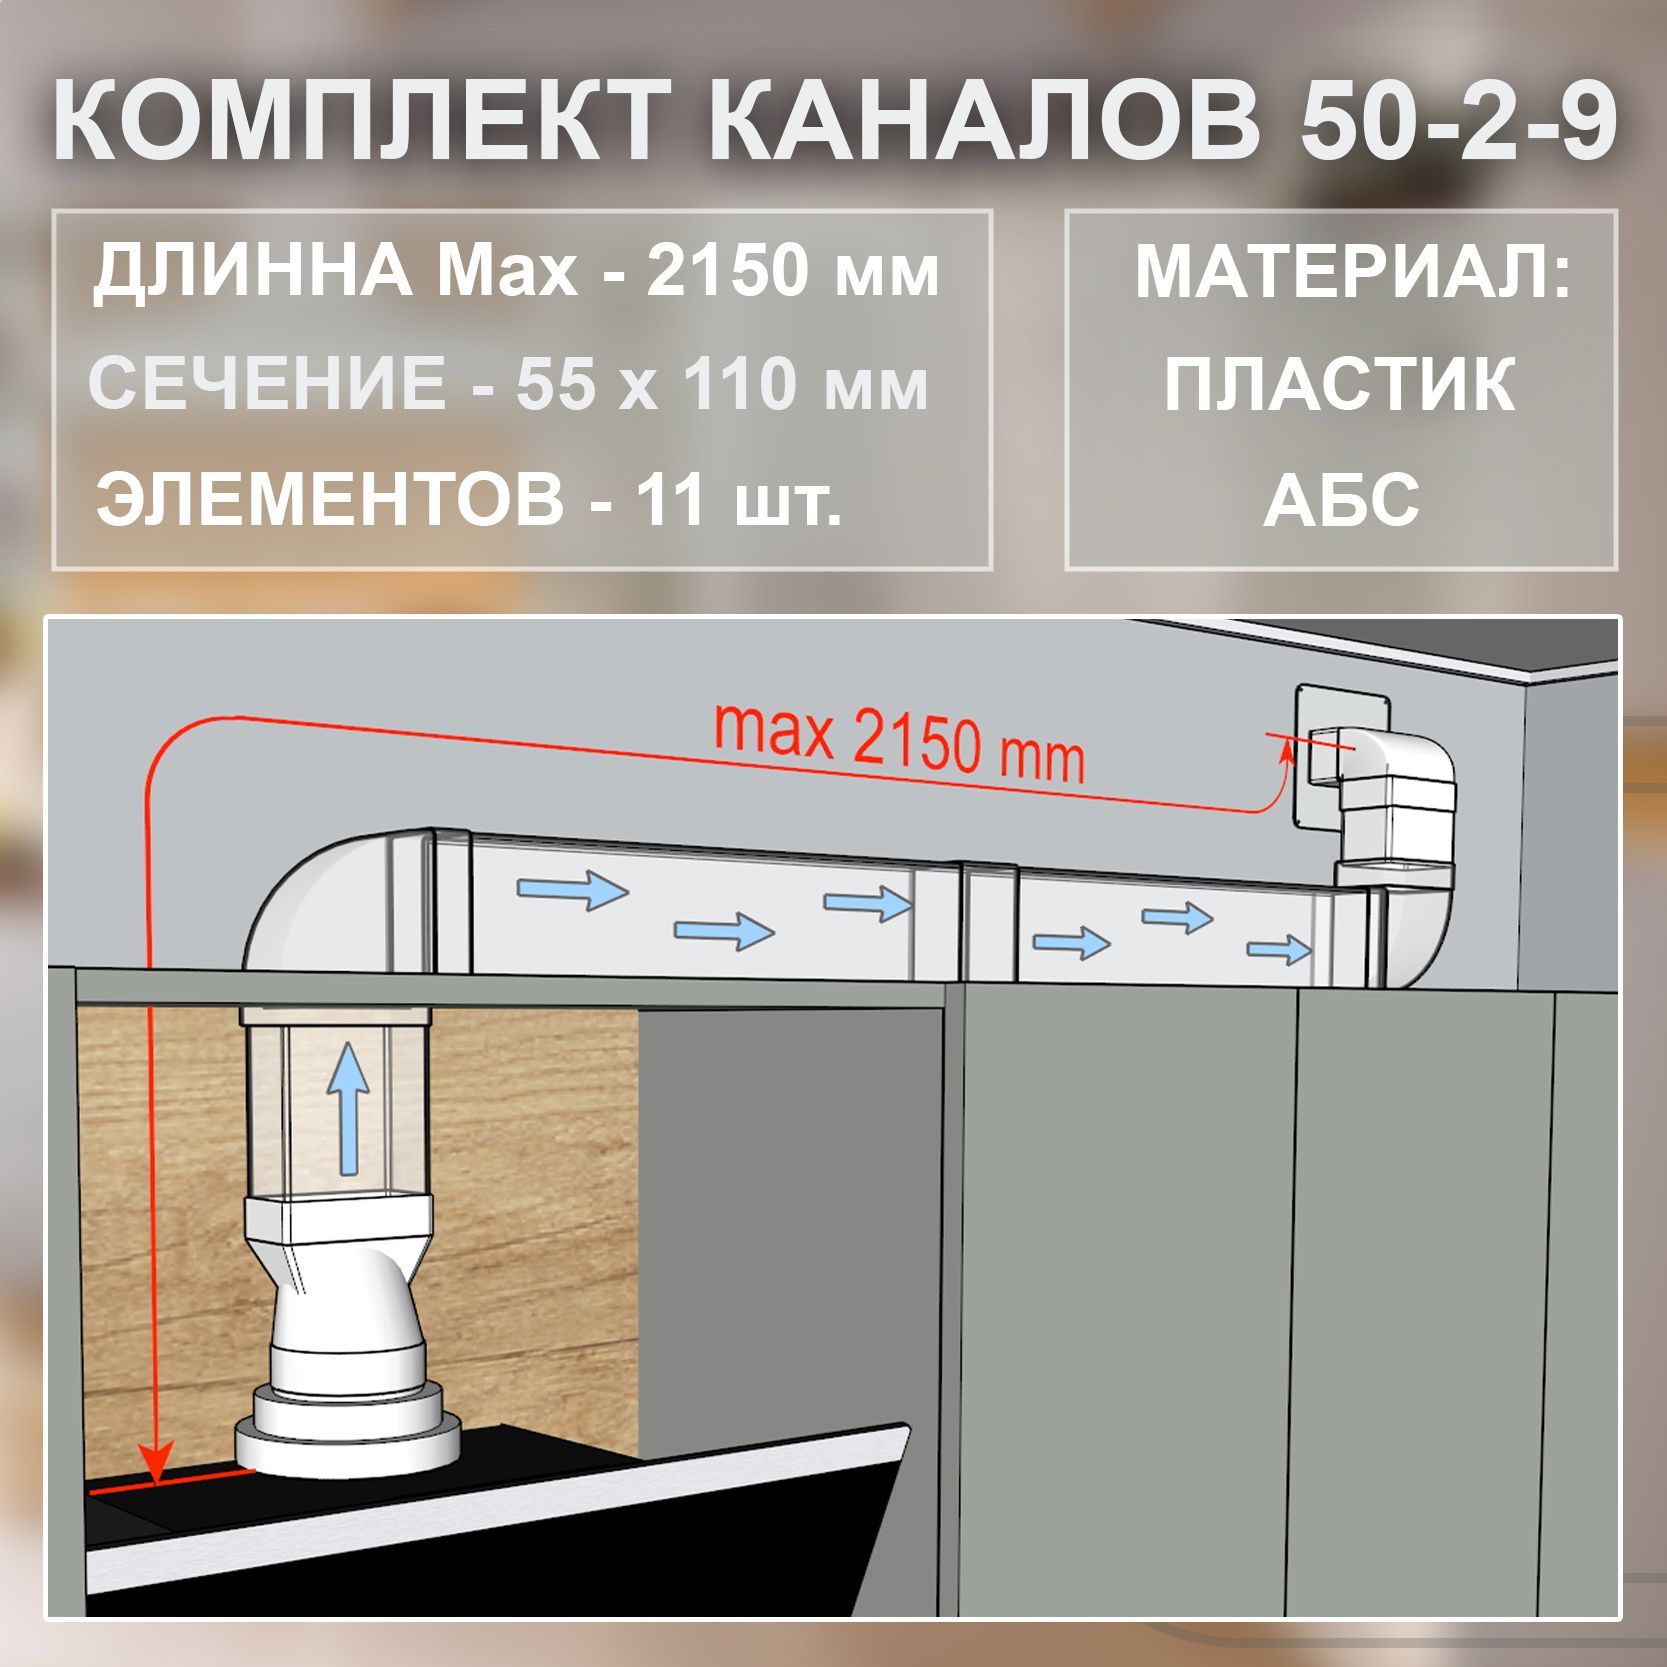 Подключение вытяжки к вентиляционному каналу на кухне с обратным клапаном